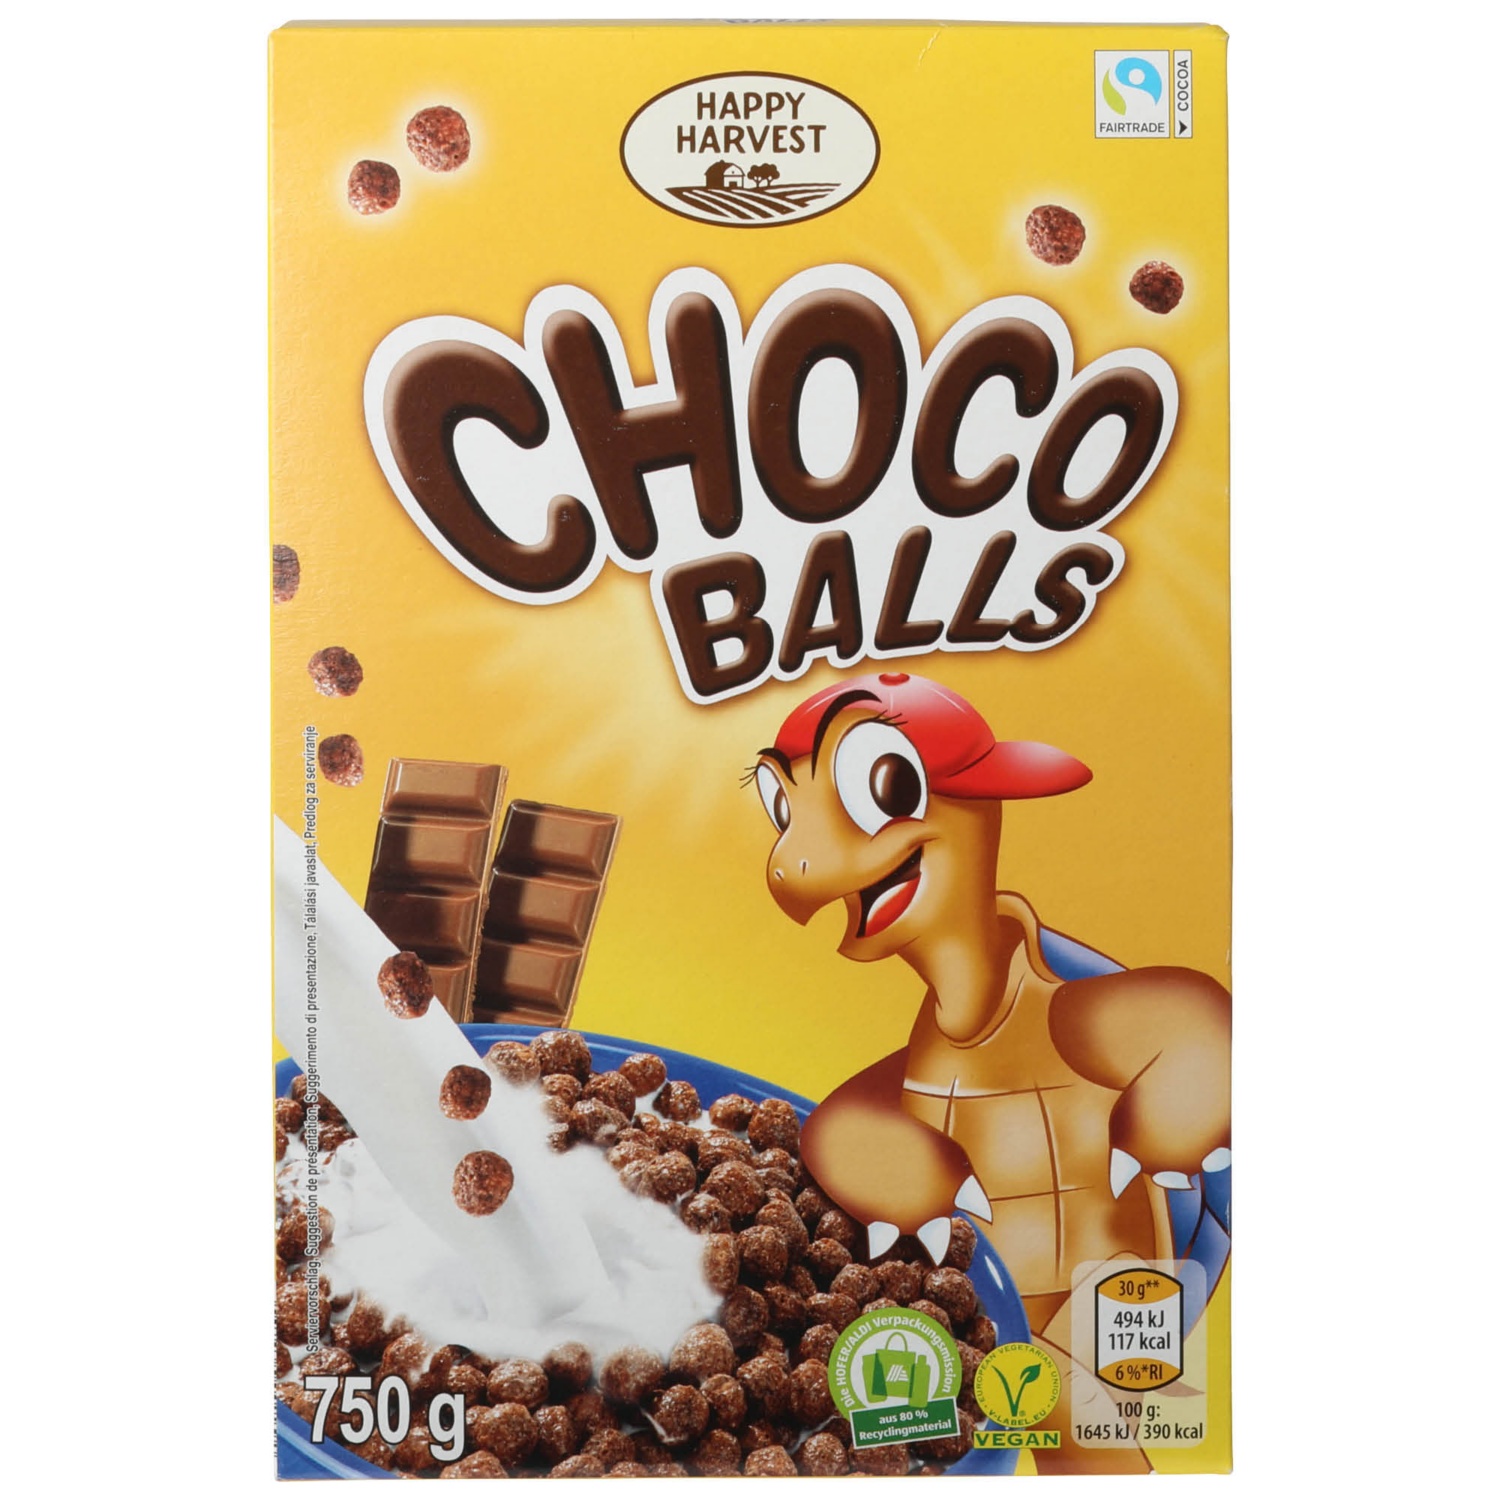 HAPPY HARVEST Choco Balls